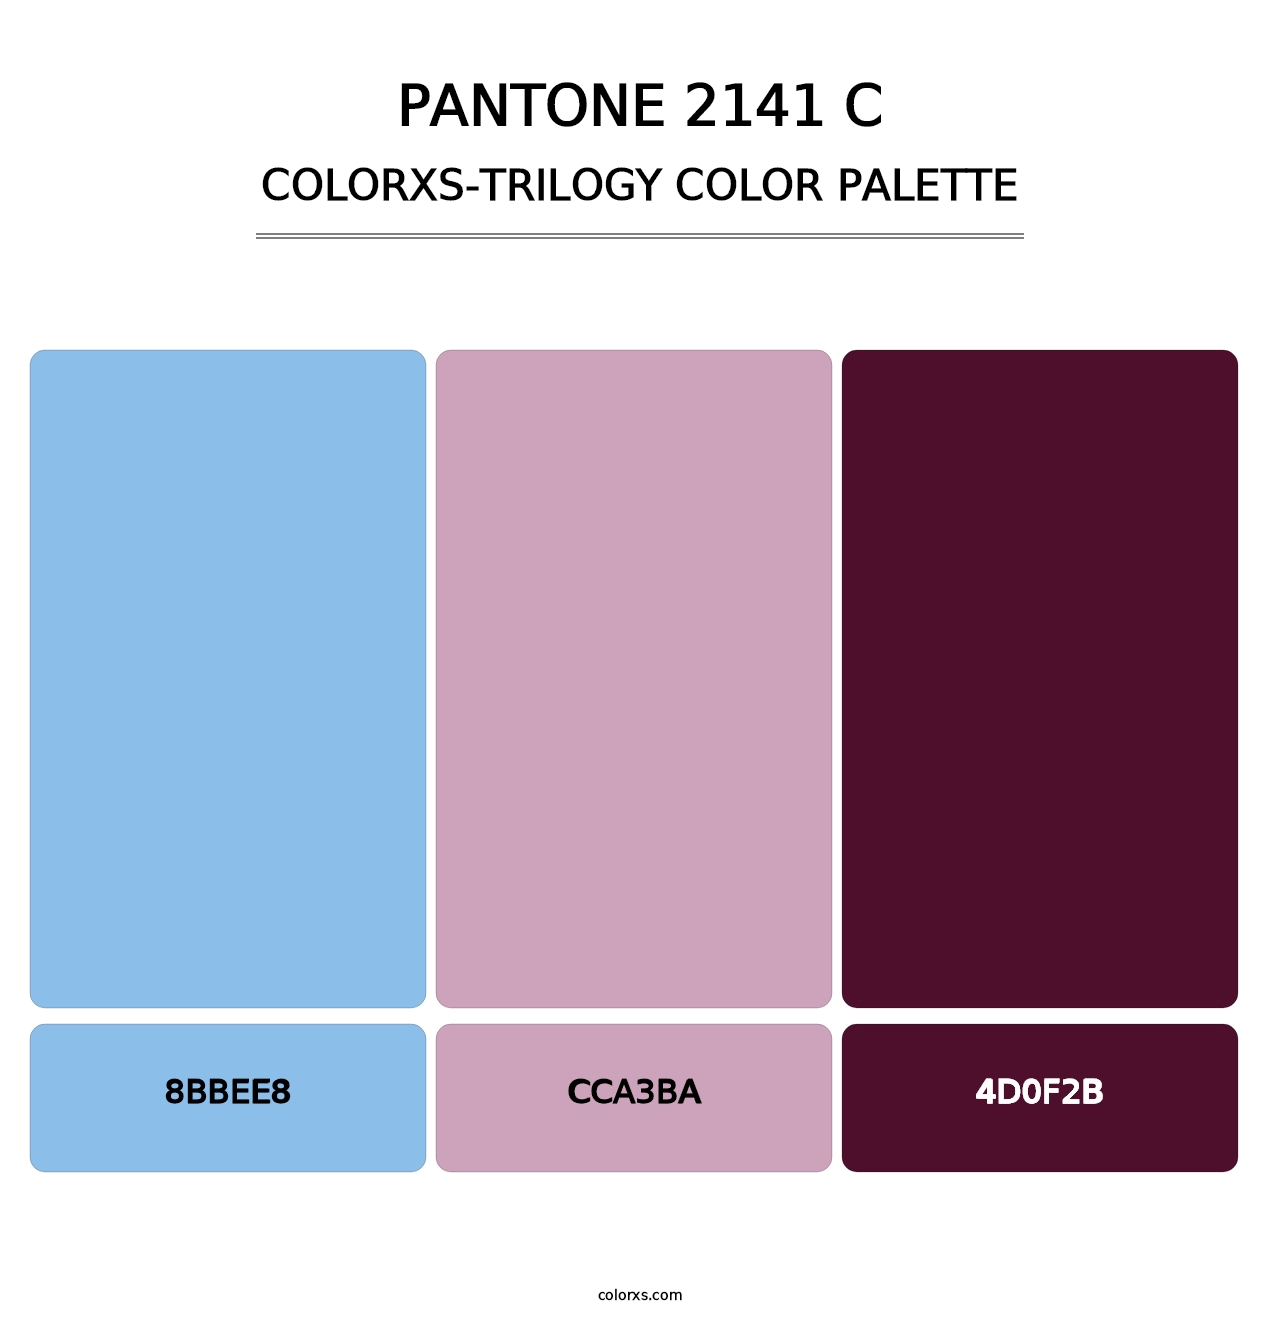 PANTONE 2141 C - Colorxs Trilogy Palette